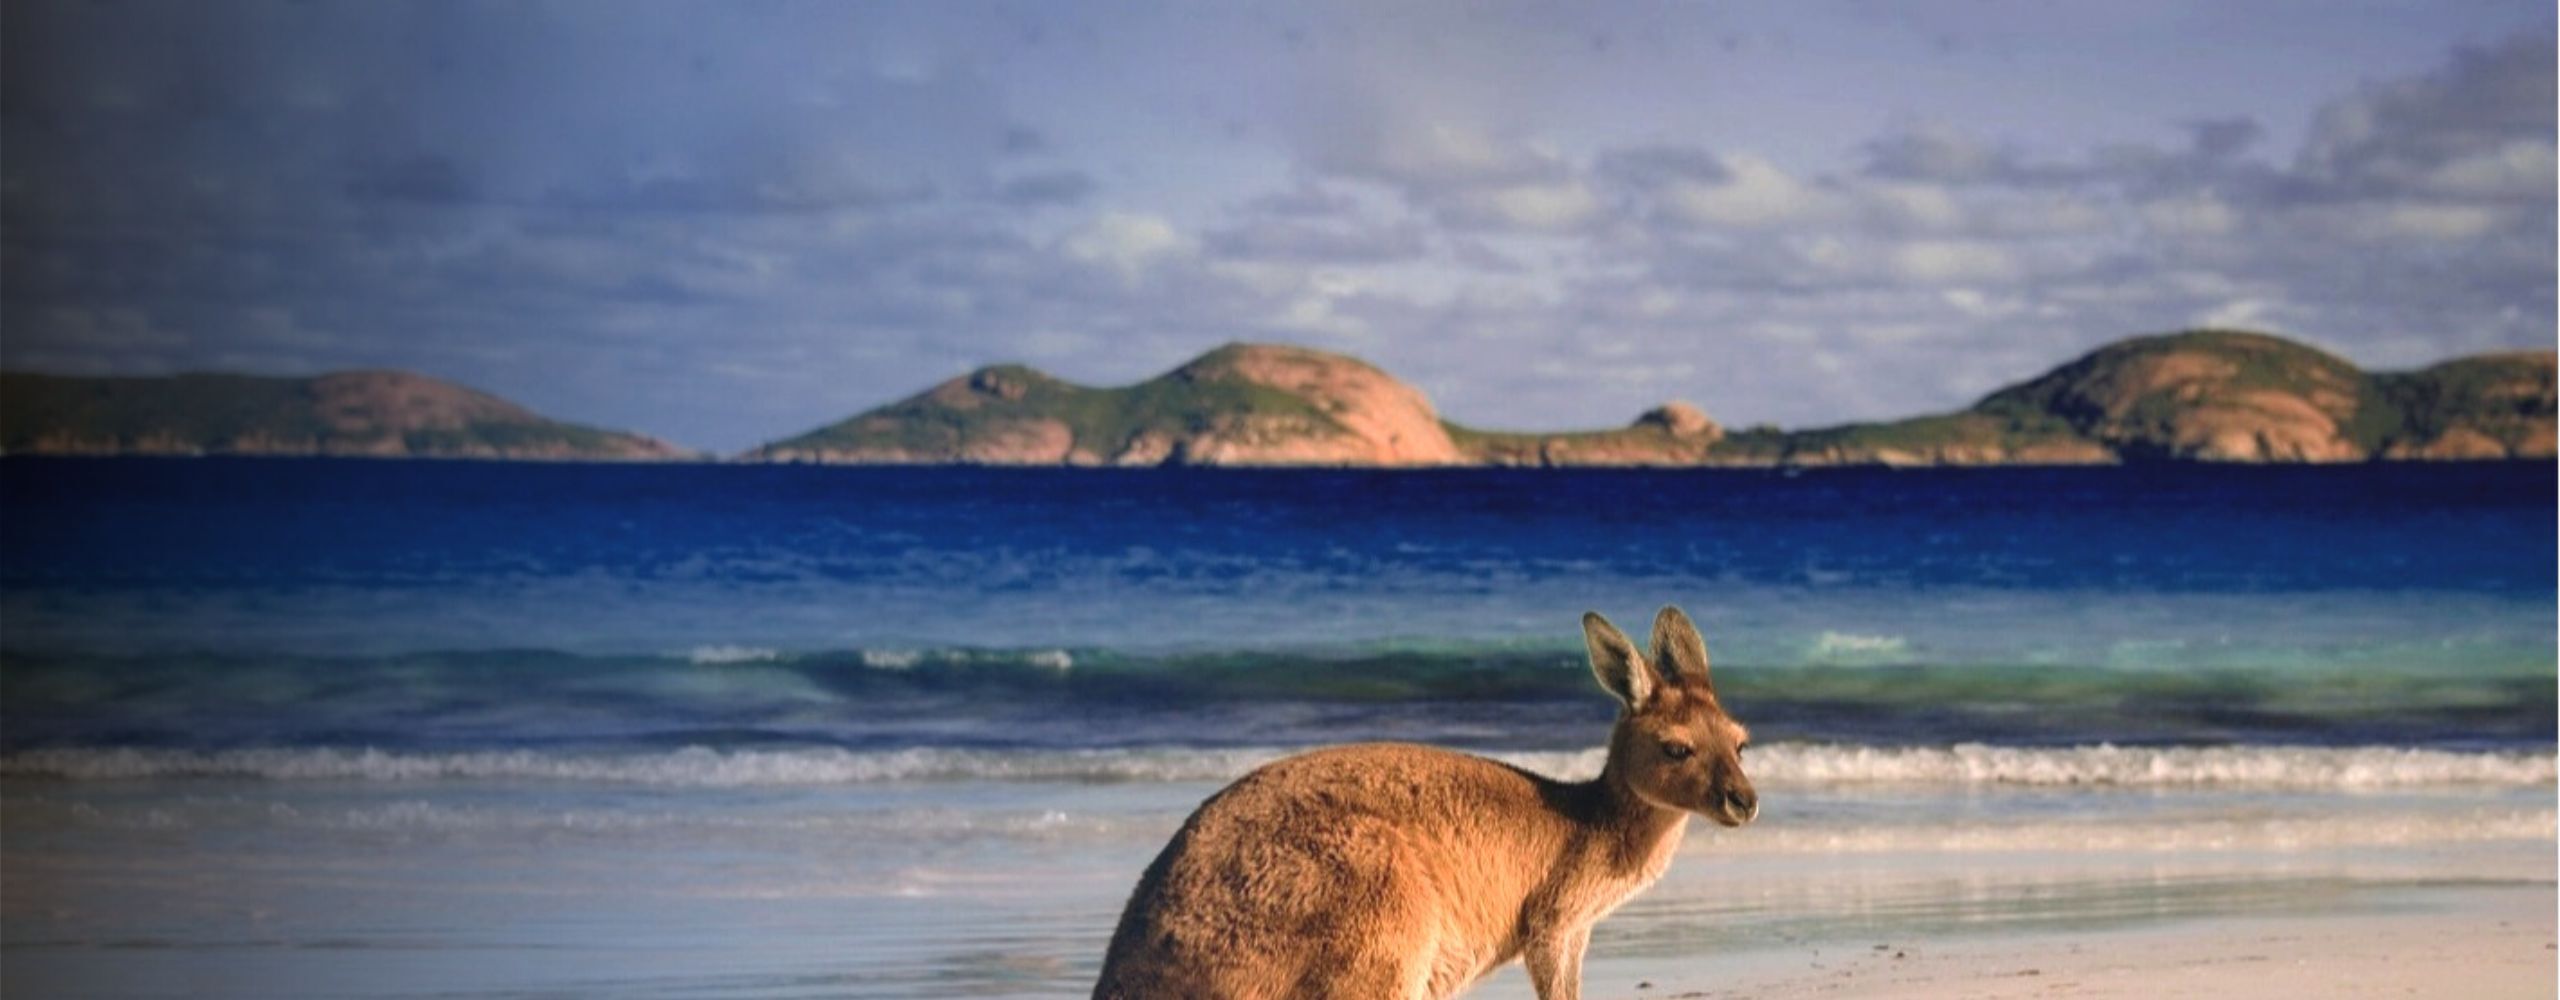 kangaroo on beach